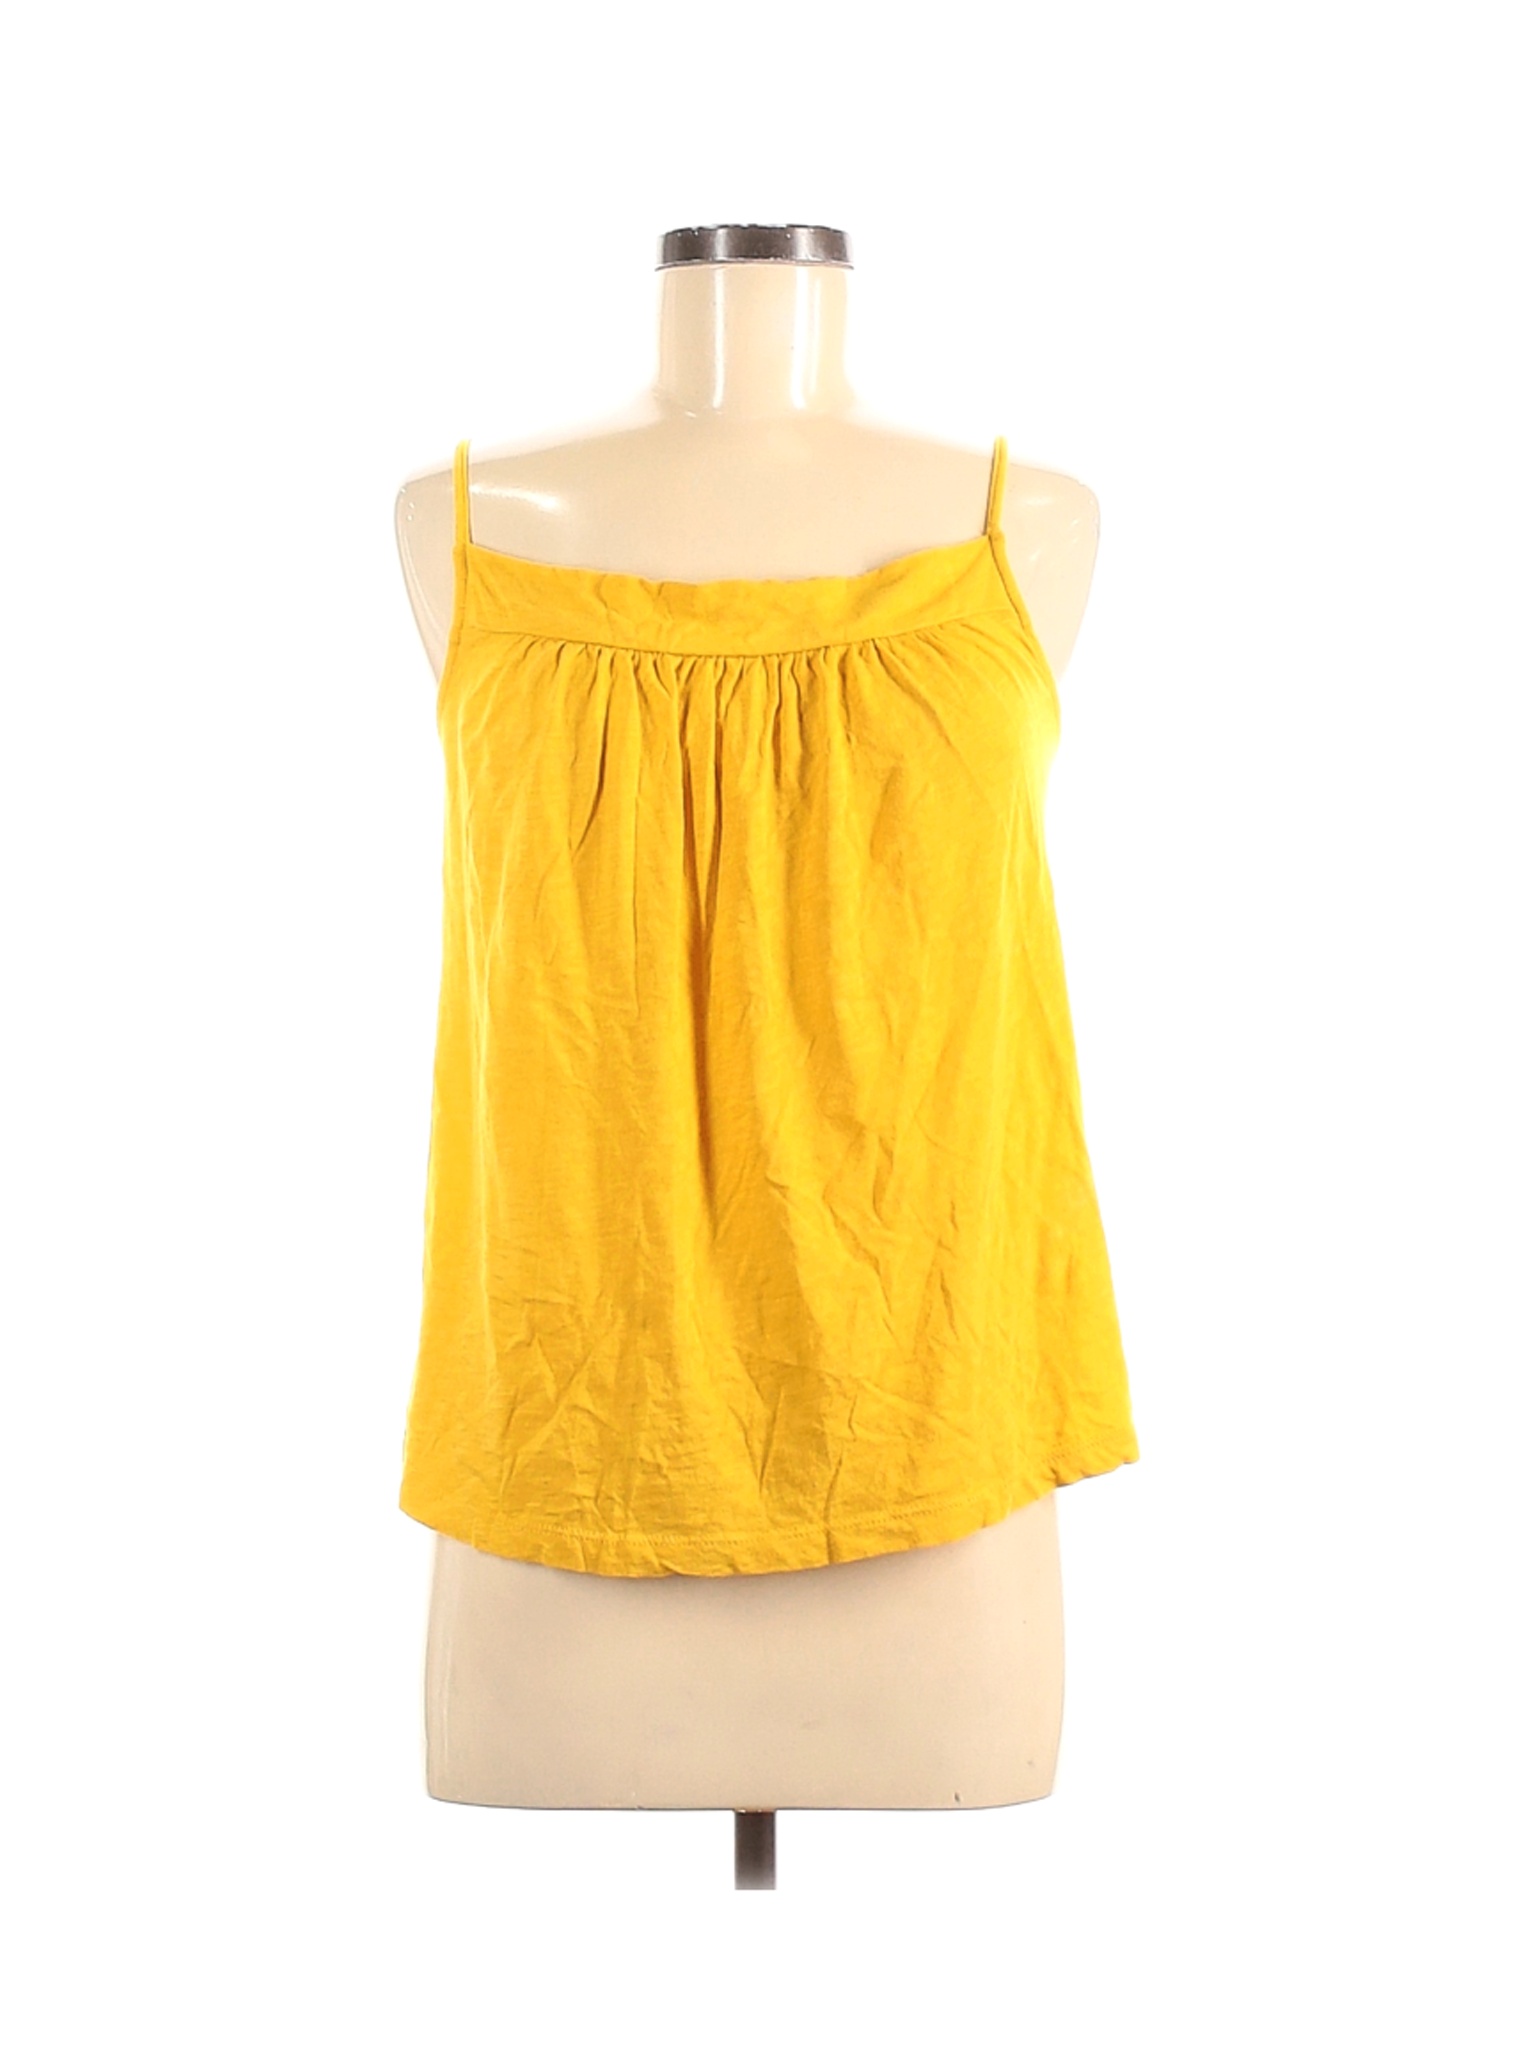 J.Crew Women Yellow Sleeveless Top M | eBay